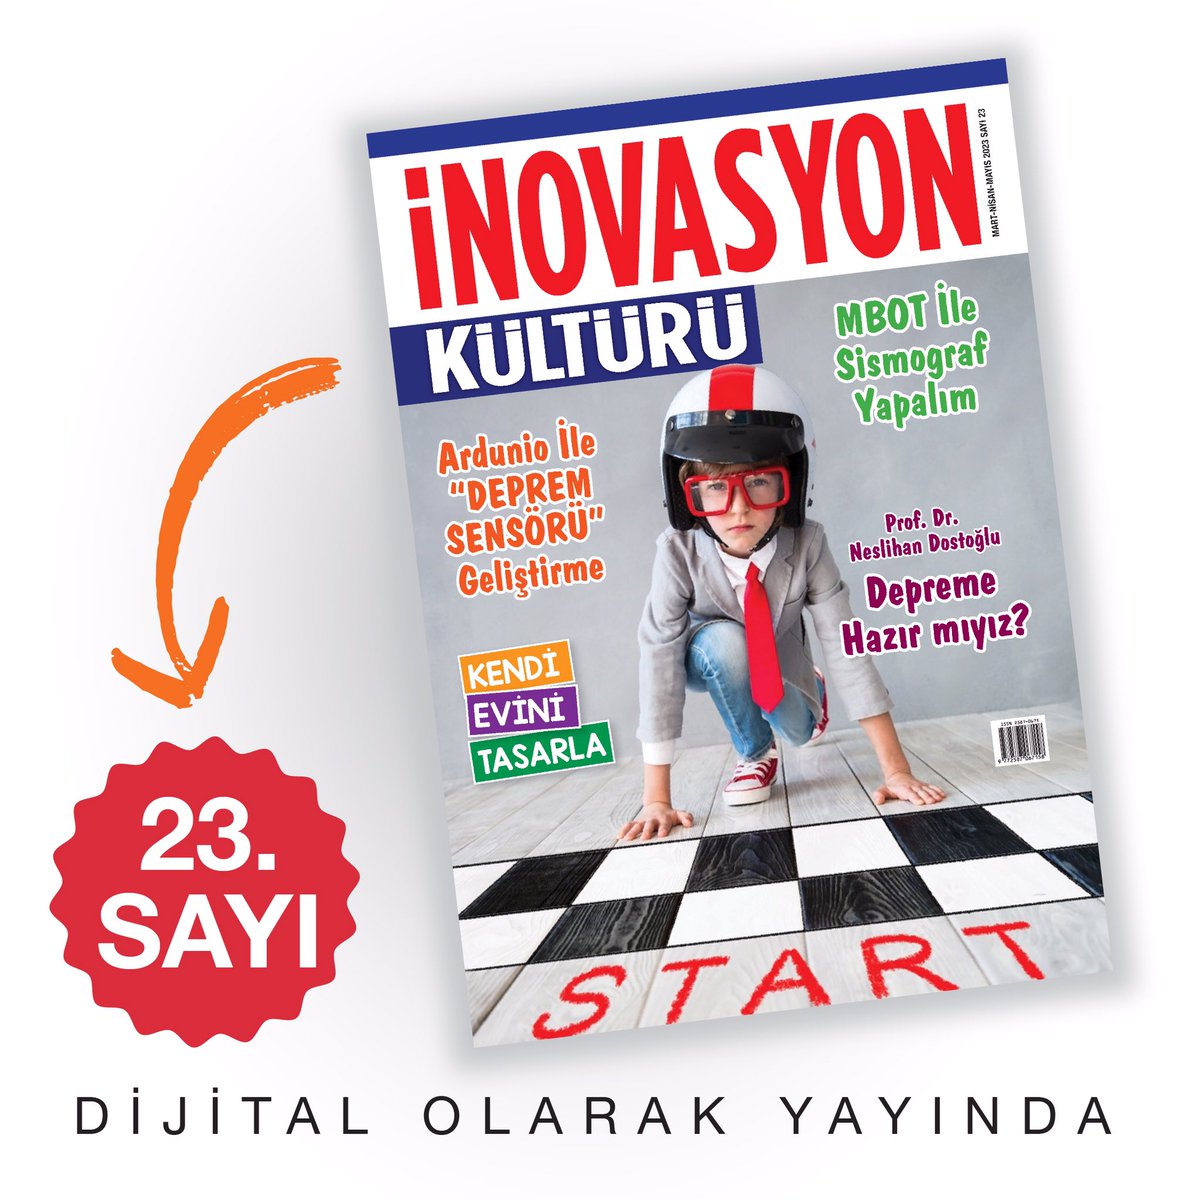 İnovasyon Kültürü Dergimizin 23. sayısı dijitalde yayınlandı! inovasyonkulturu.com